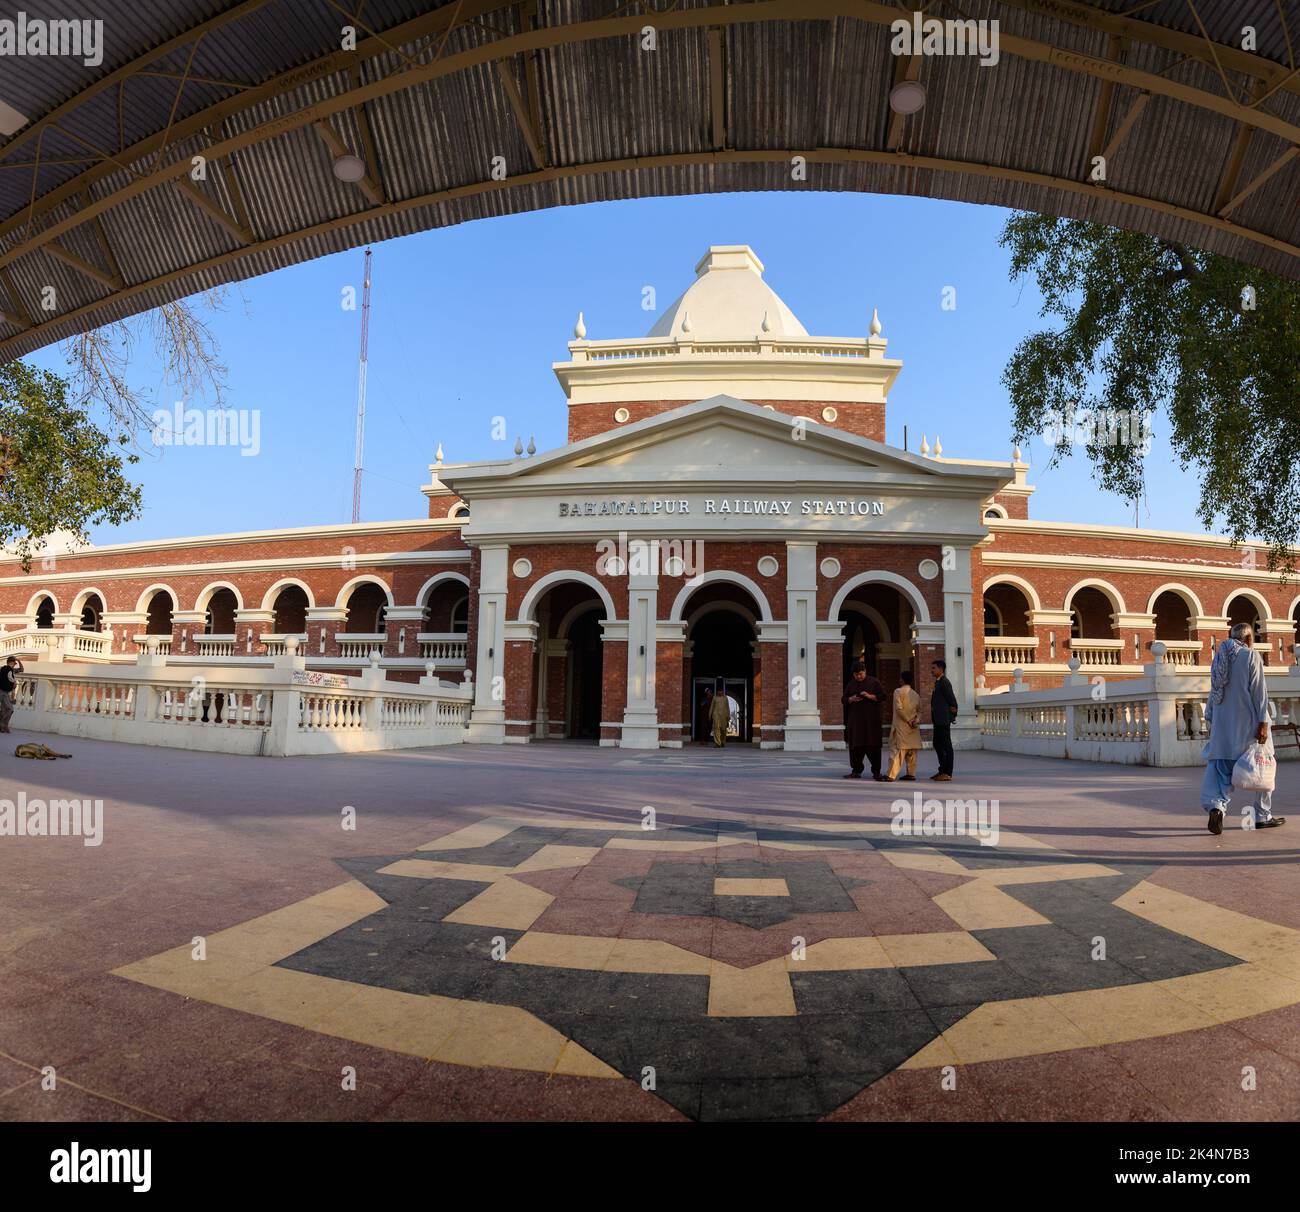 BAHAWALPUR, PAKISTAN-24 FÉVRIER 2020; vue de façade de la gare de Bahawalpur Banque D'Images